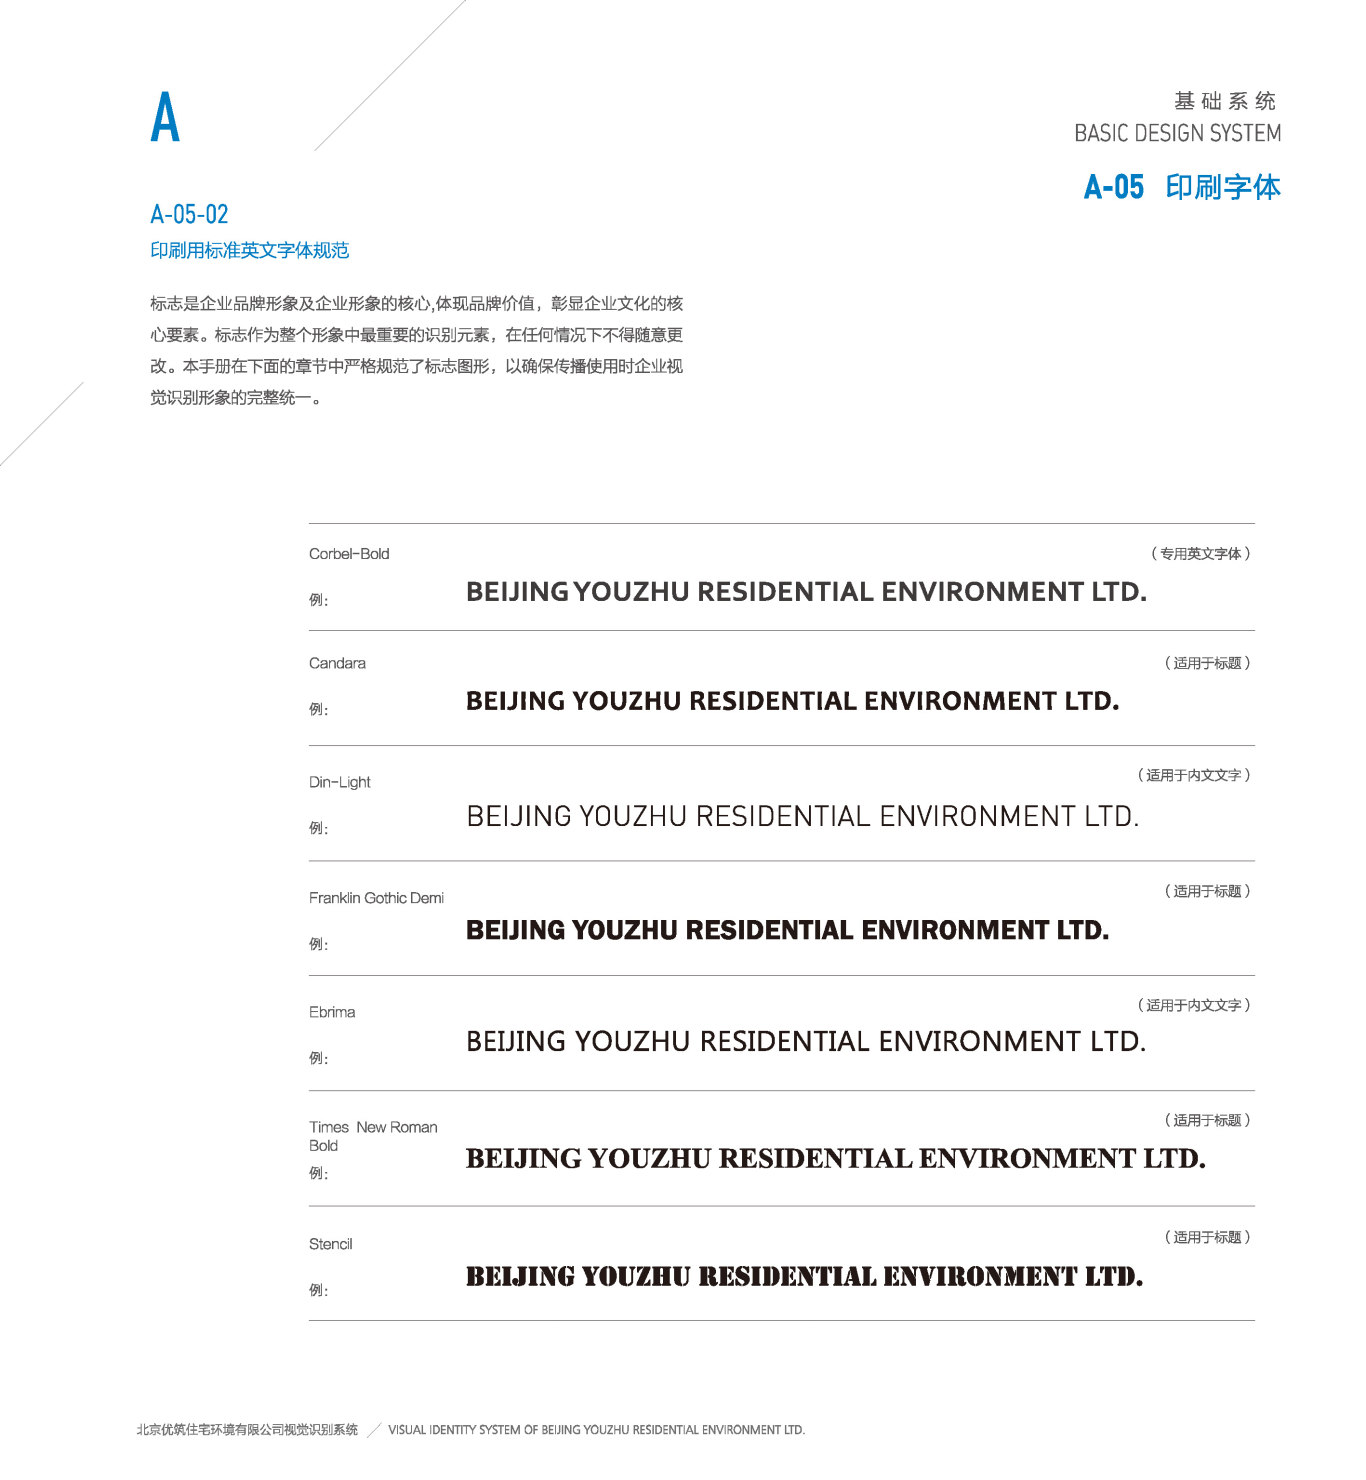 北京悠筑住宅環境有限公司VI系統圖13